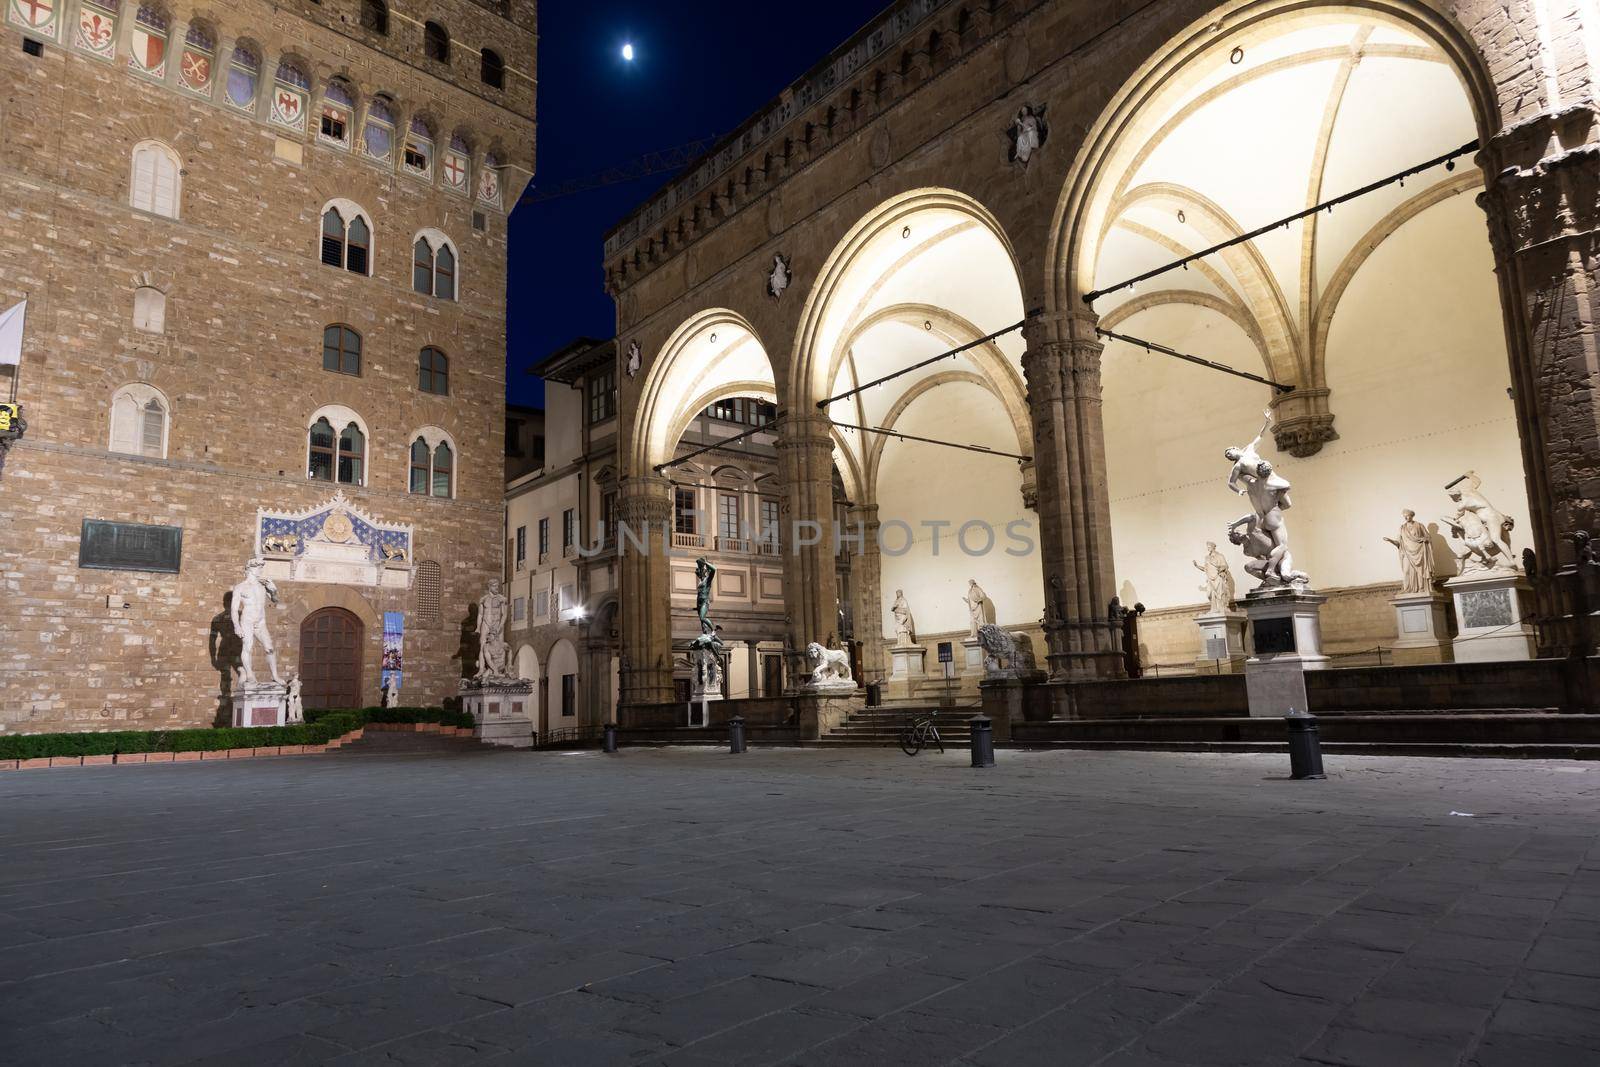 Florence architecture illuminated by night, Piazza della Signoria - Signoria Square - Italy. Urban scene in exterior - nobody by Perseomedusa